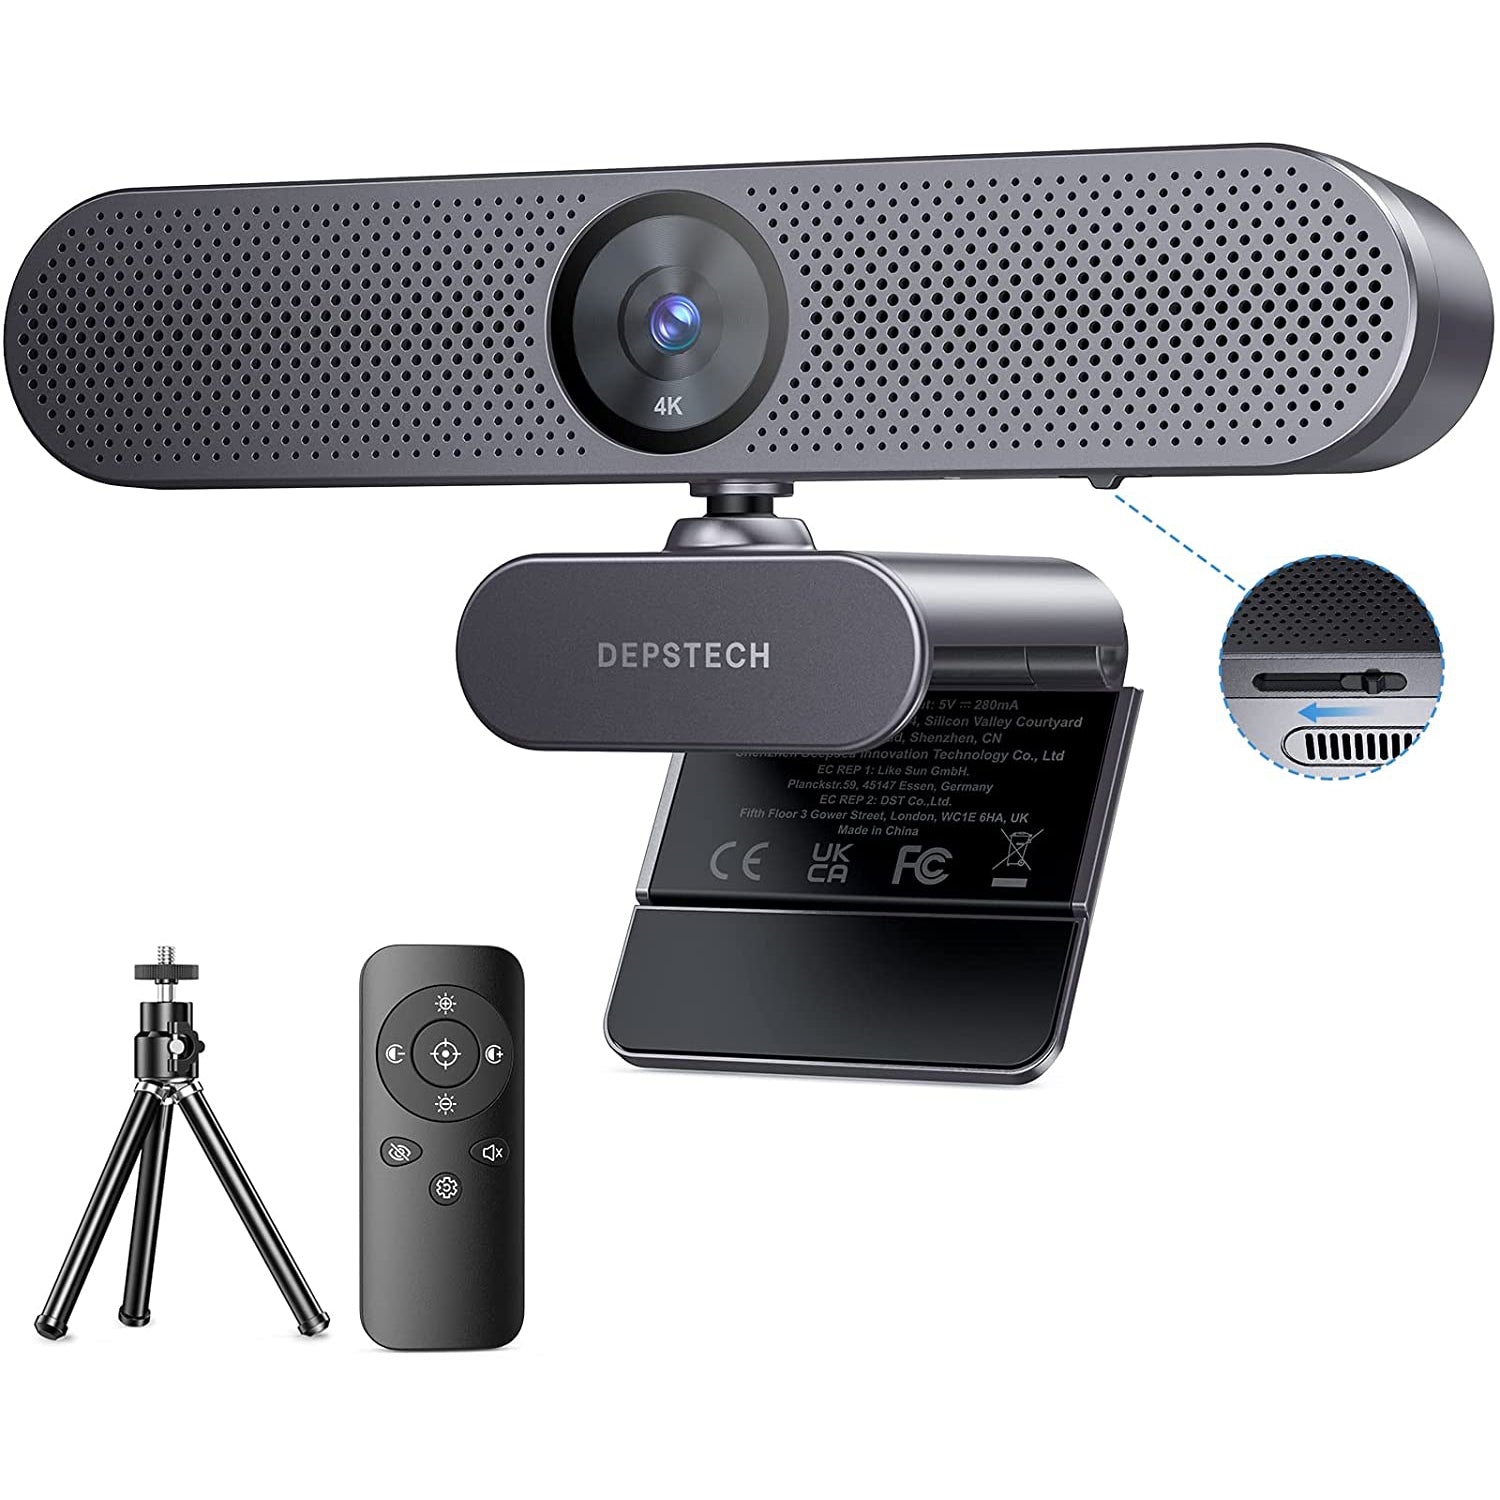 4K Webcam with Remote Control, AutoFocus 8MP Sony Sensor Web Camera